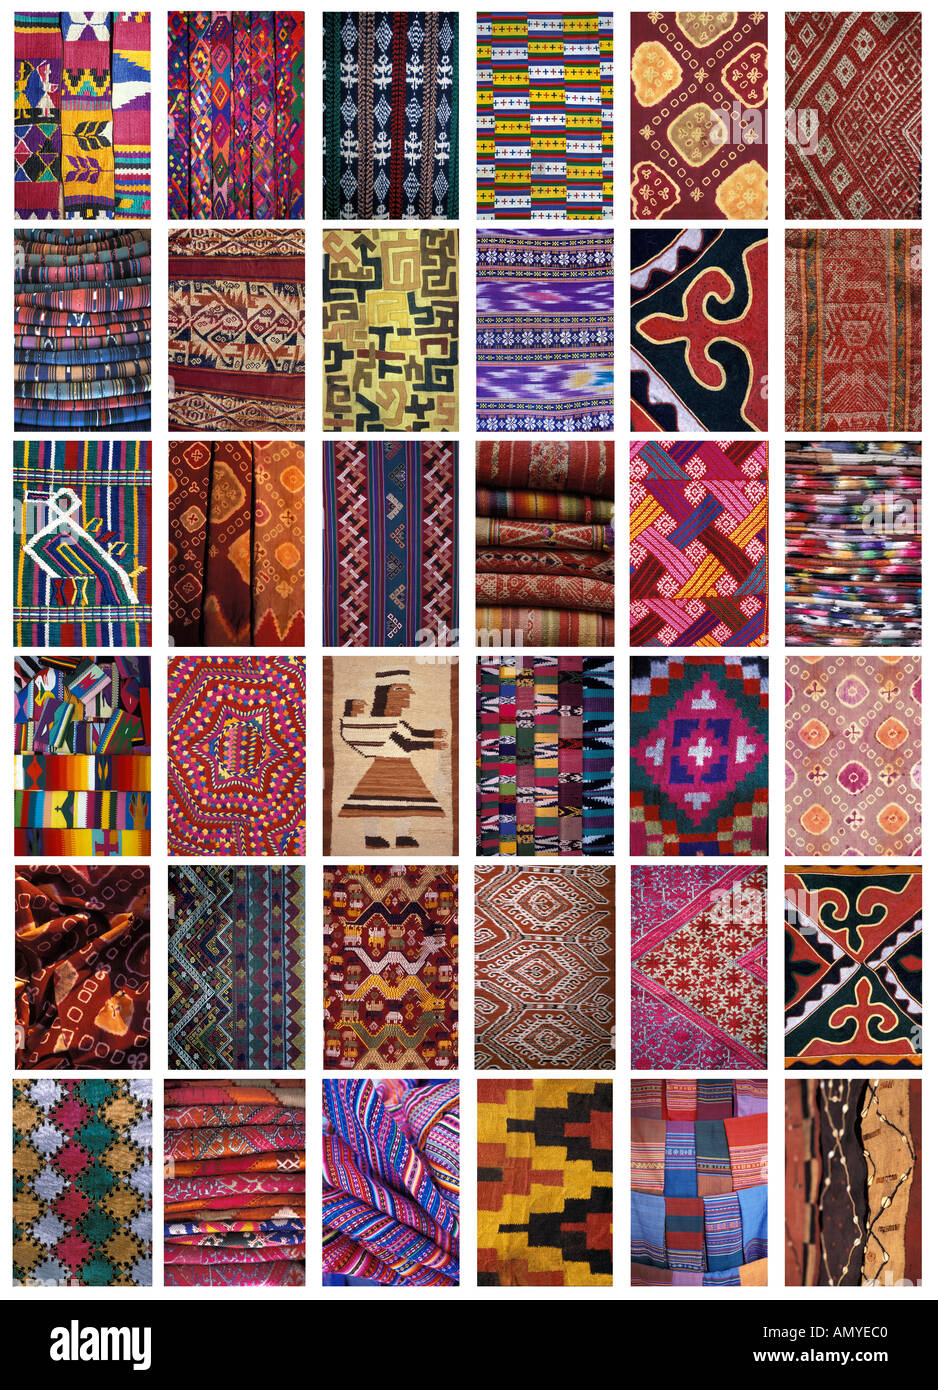 Collage de 36 motifs textiles de partout dans le monde en Asie et en Amérique latine l'image grand format Banque D'Images